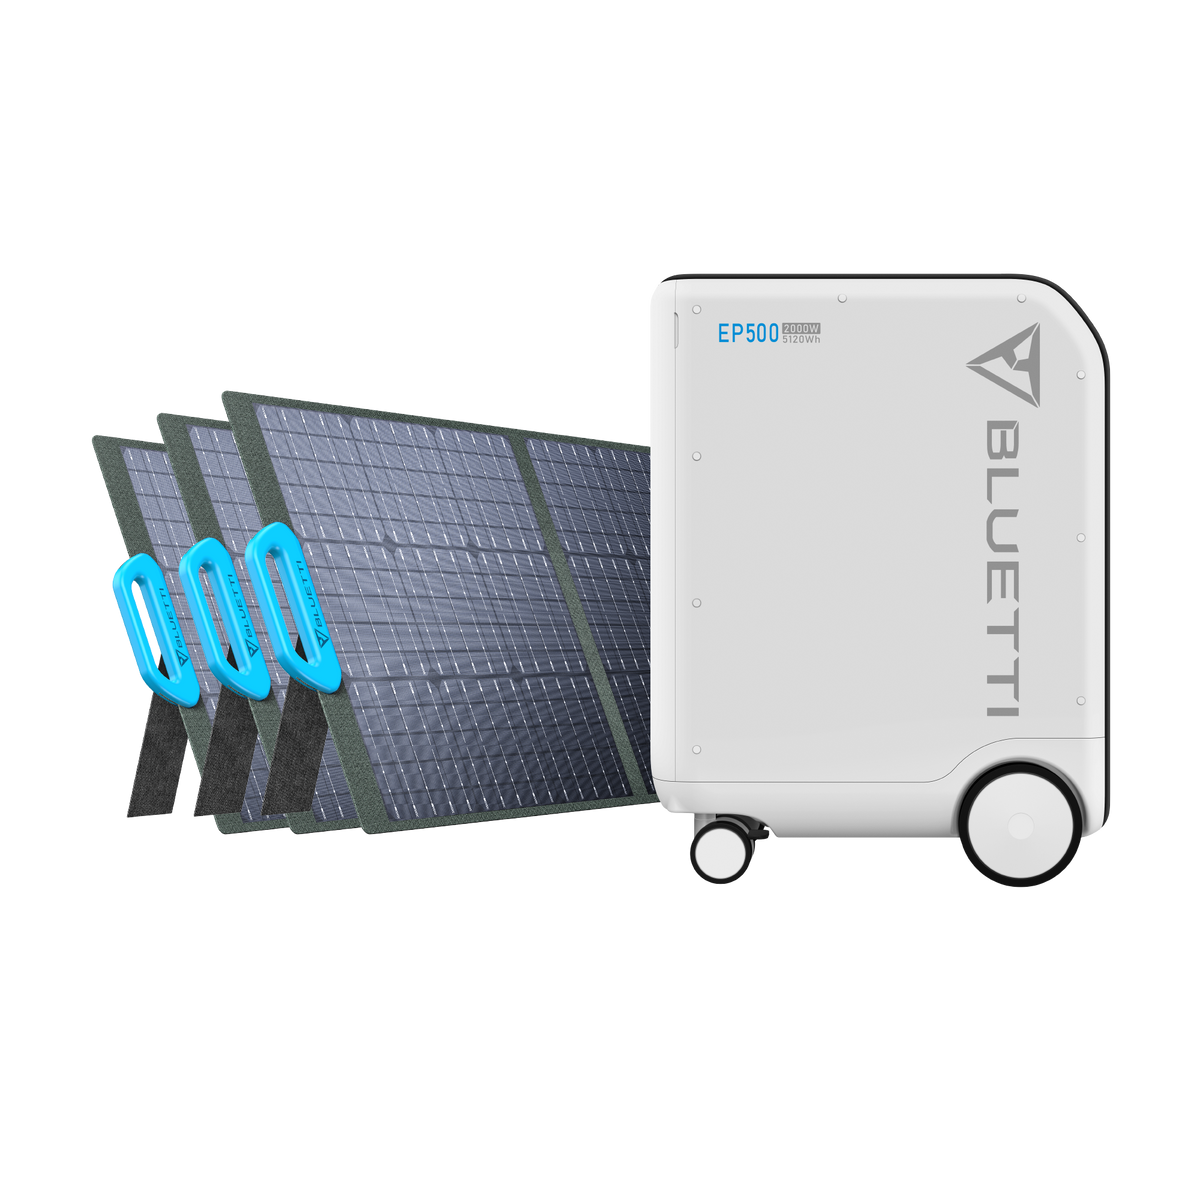 BLUETTI Kit de générateur solaire 5100Wh avec 3 panneaux solaires de 200 W groupe  électrogène solaire station énergie mobile et domestique extensible